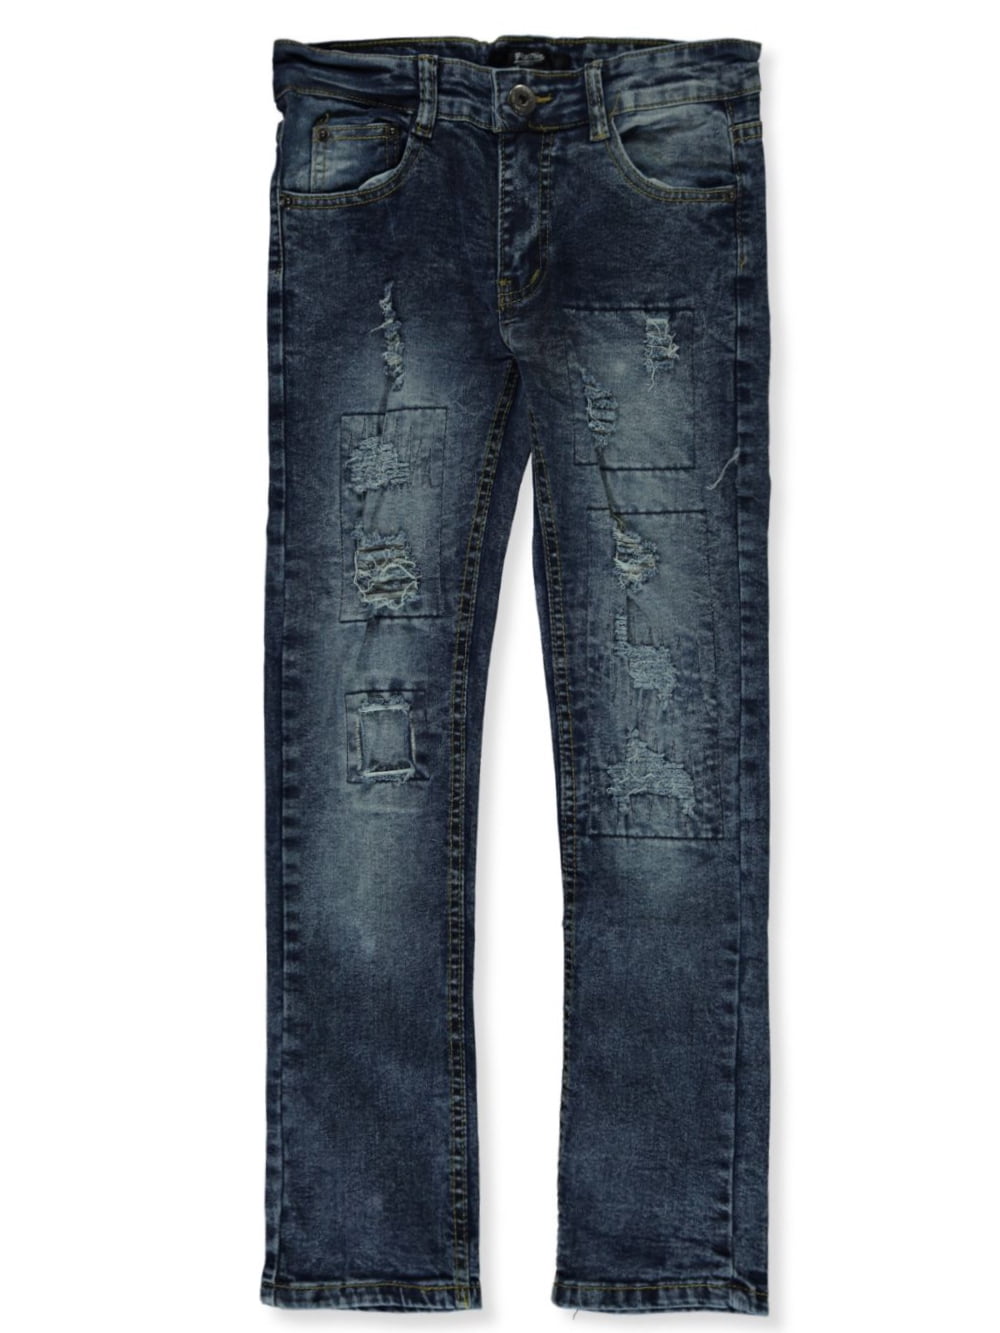 Public Supply Co. Boys' Rip Stitch Jeans - black wash, 12 (Big